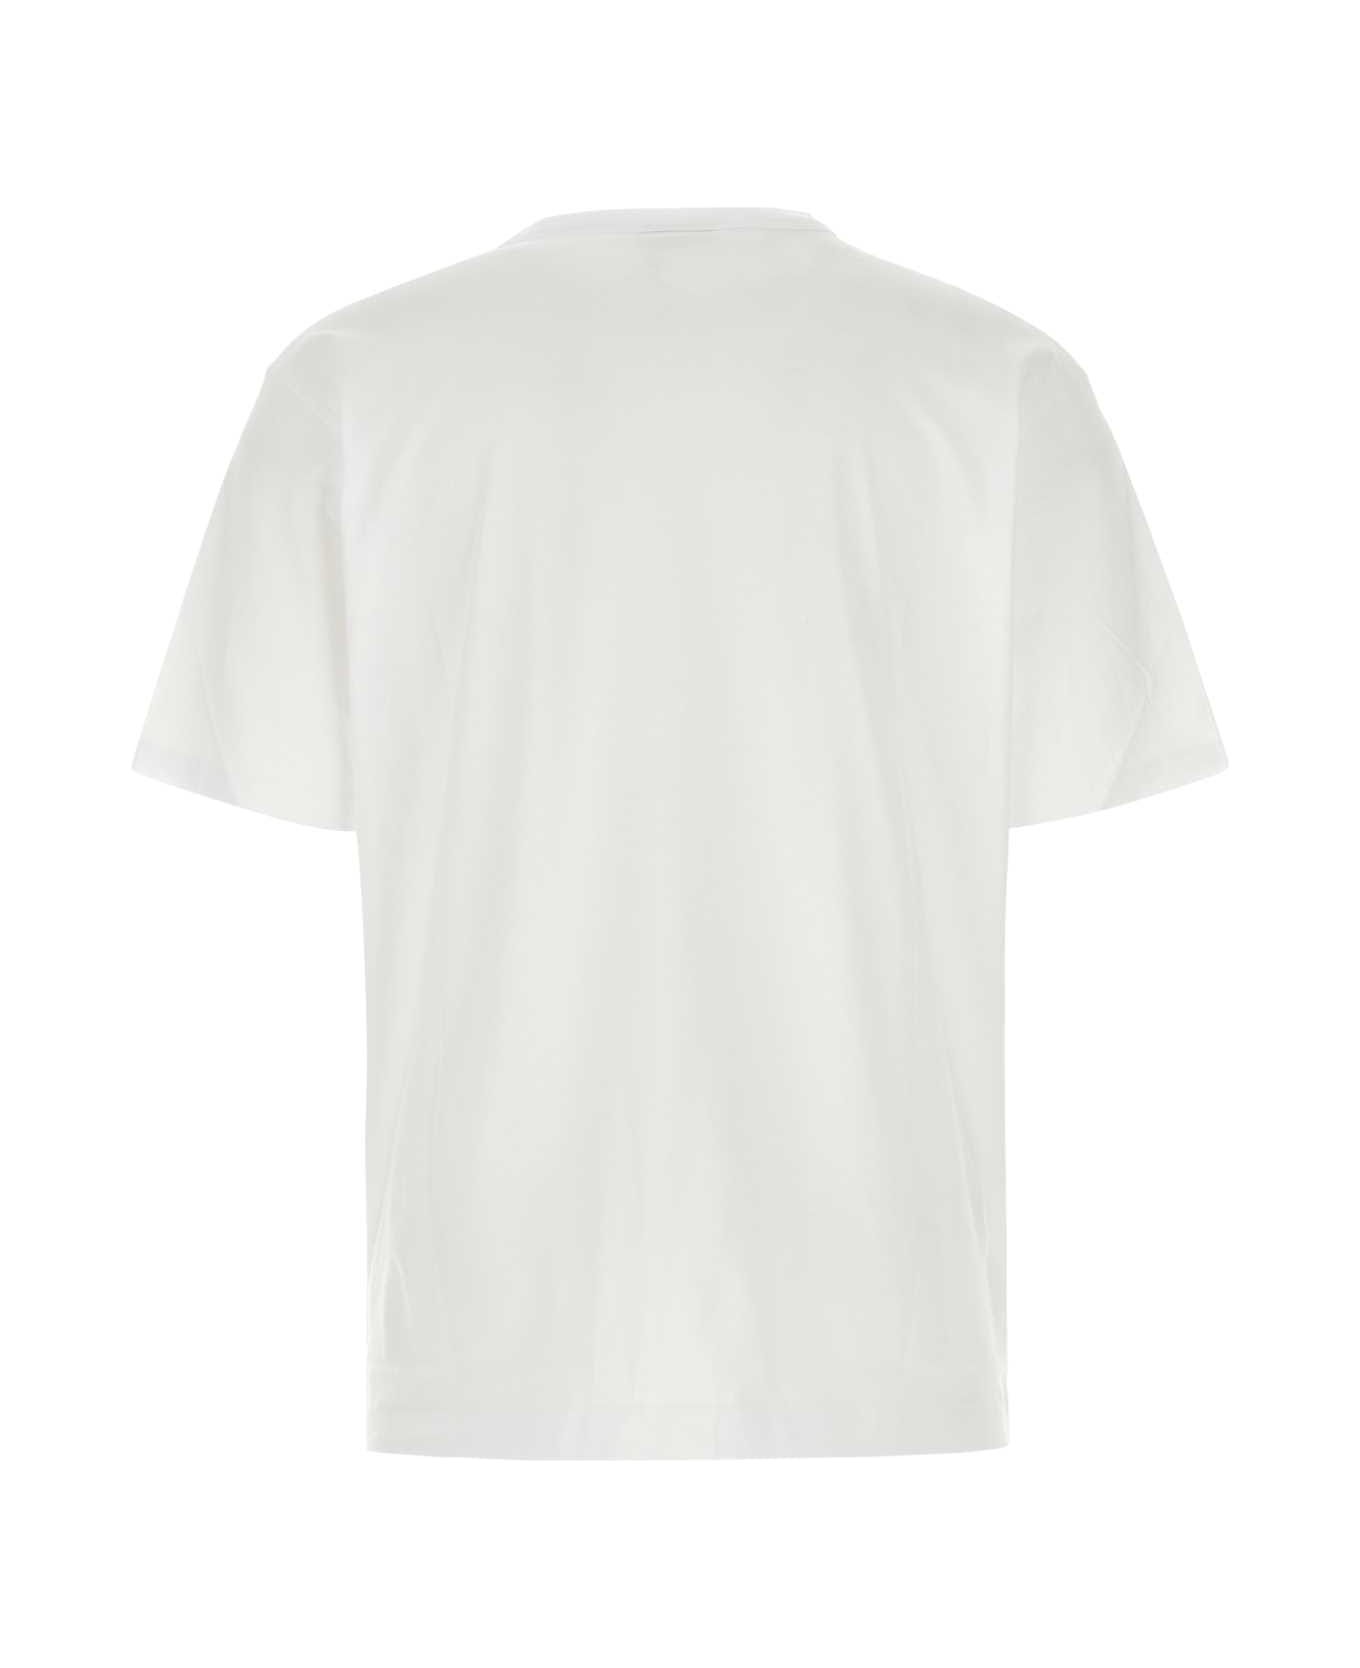 Dries Van Noten White Cotton Heer T-shirt - White シャツ